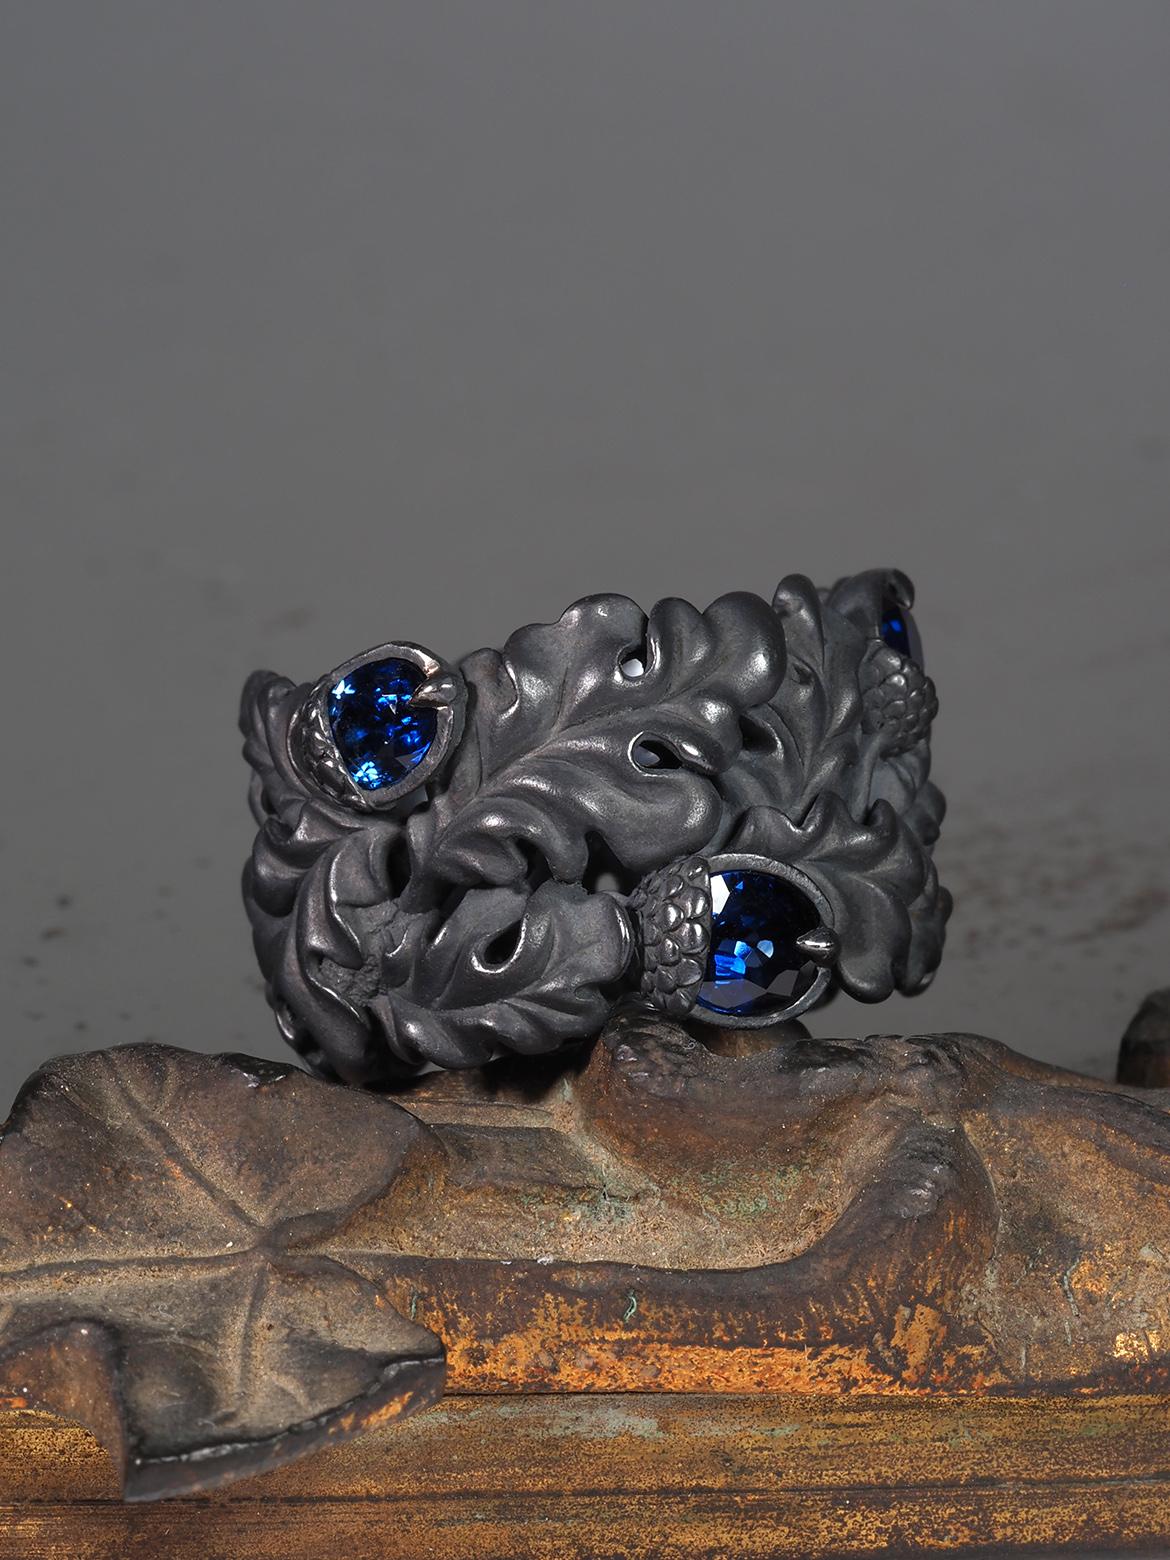 Bague à large bande Chêne et 6 glands en argent patiné gris cobalt avec 6 saphirs véritables bleus naturels de taille ovale
Origine des pierres précieuses saphirs - Sri Lanka
Poids total des pierres - 3,9 carats
Taille de la bague - 9.75 US
Poids de